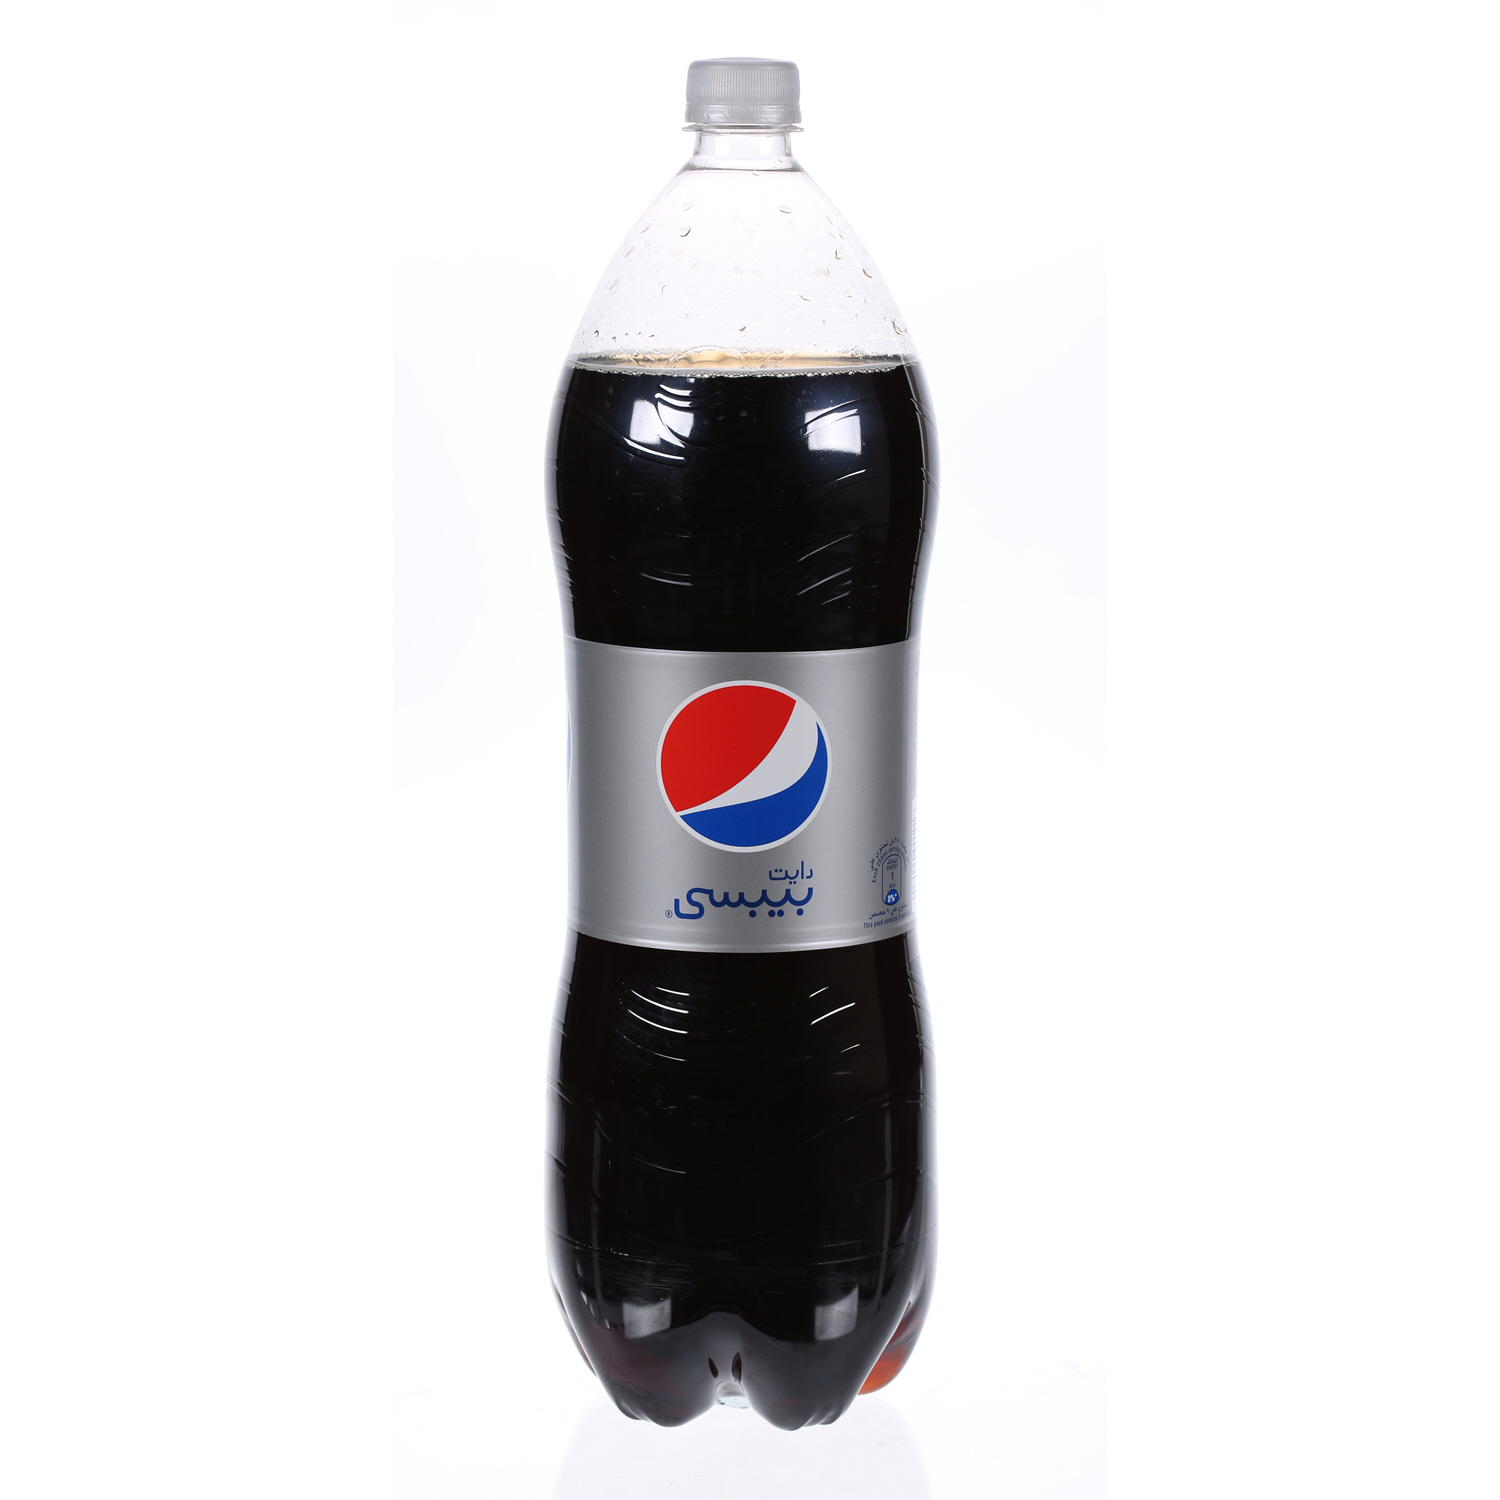 Pepsi Diet 2.25Ltr